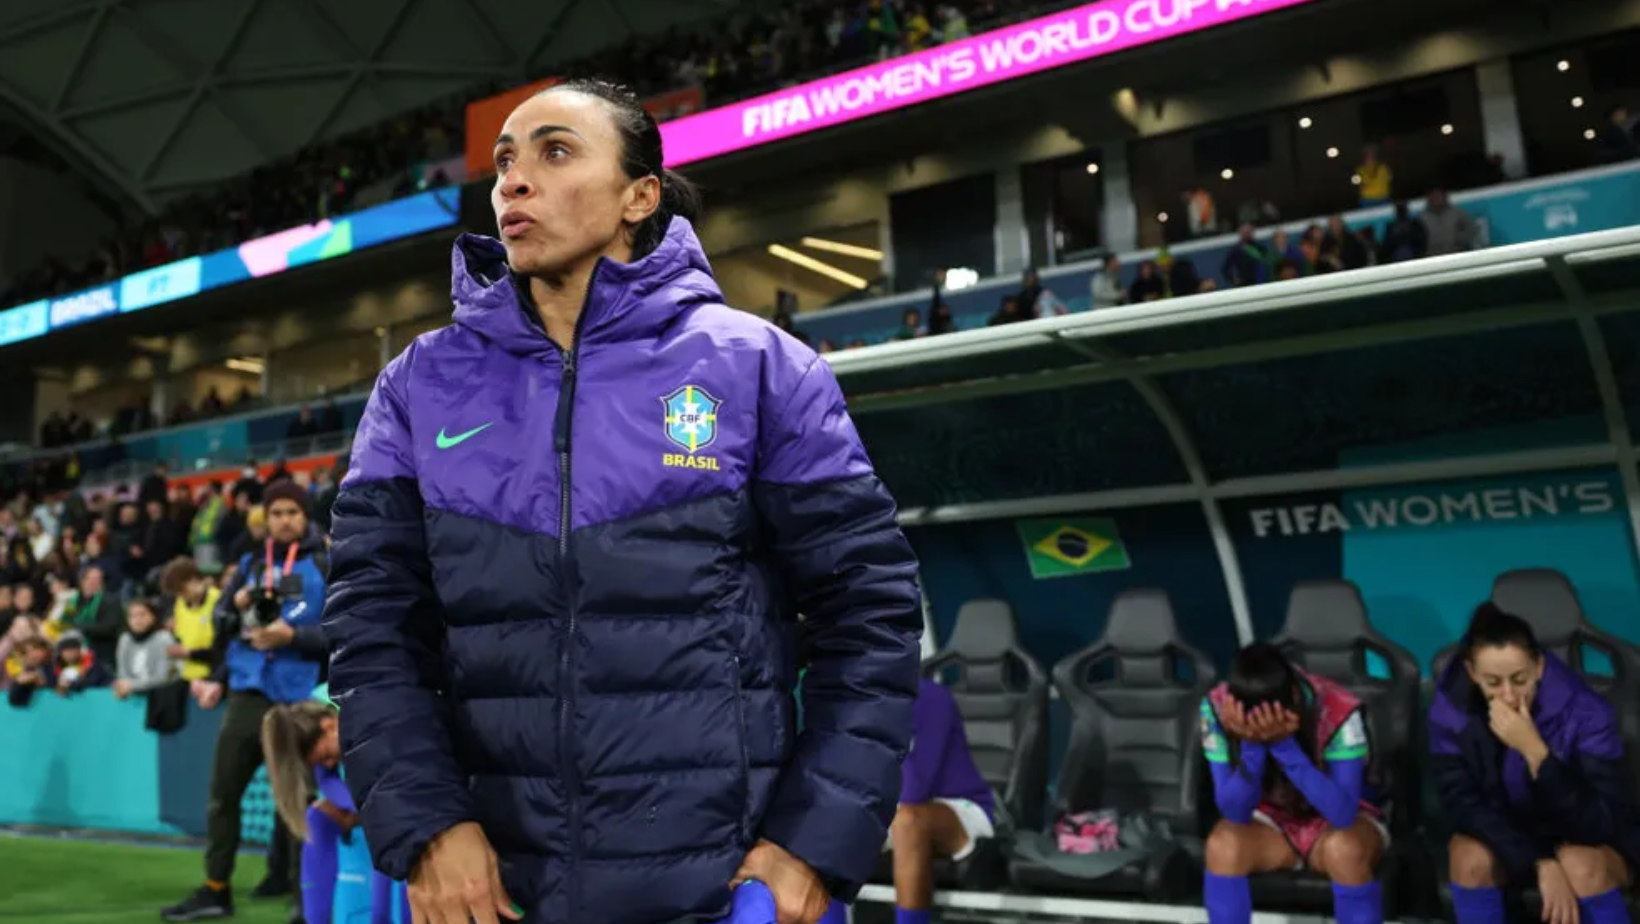 Marta anuncia despedida da Copa do Mundo Feminina: “Fim da linha para mim”  – Clic News